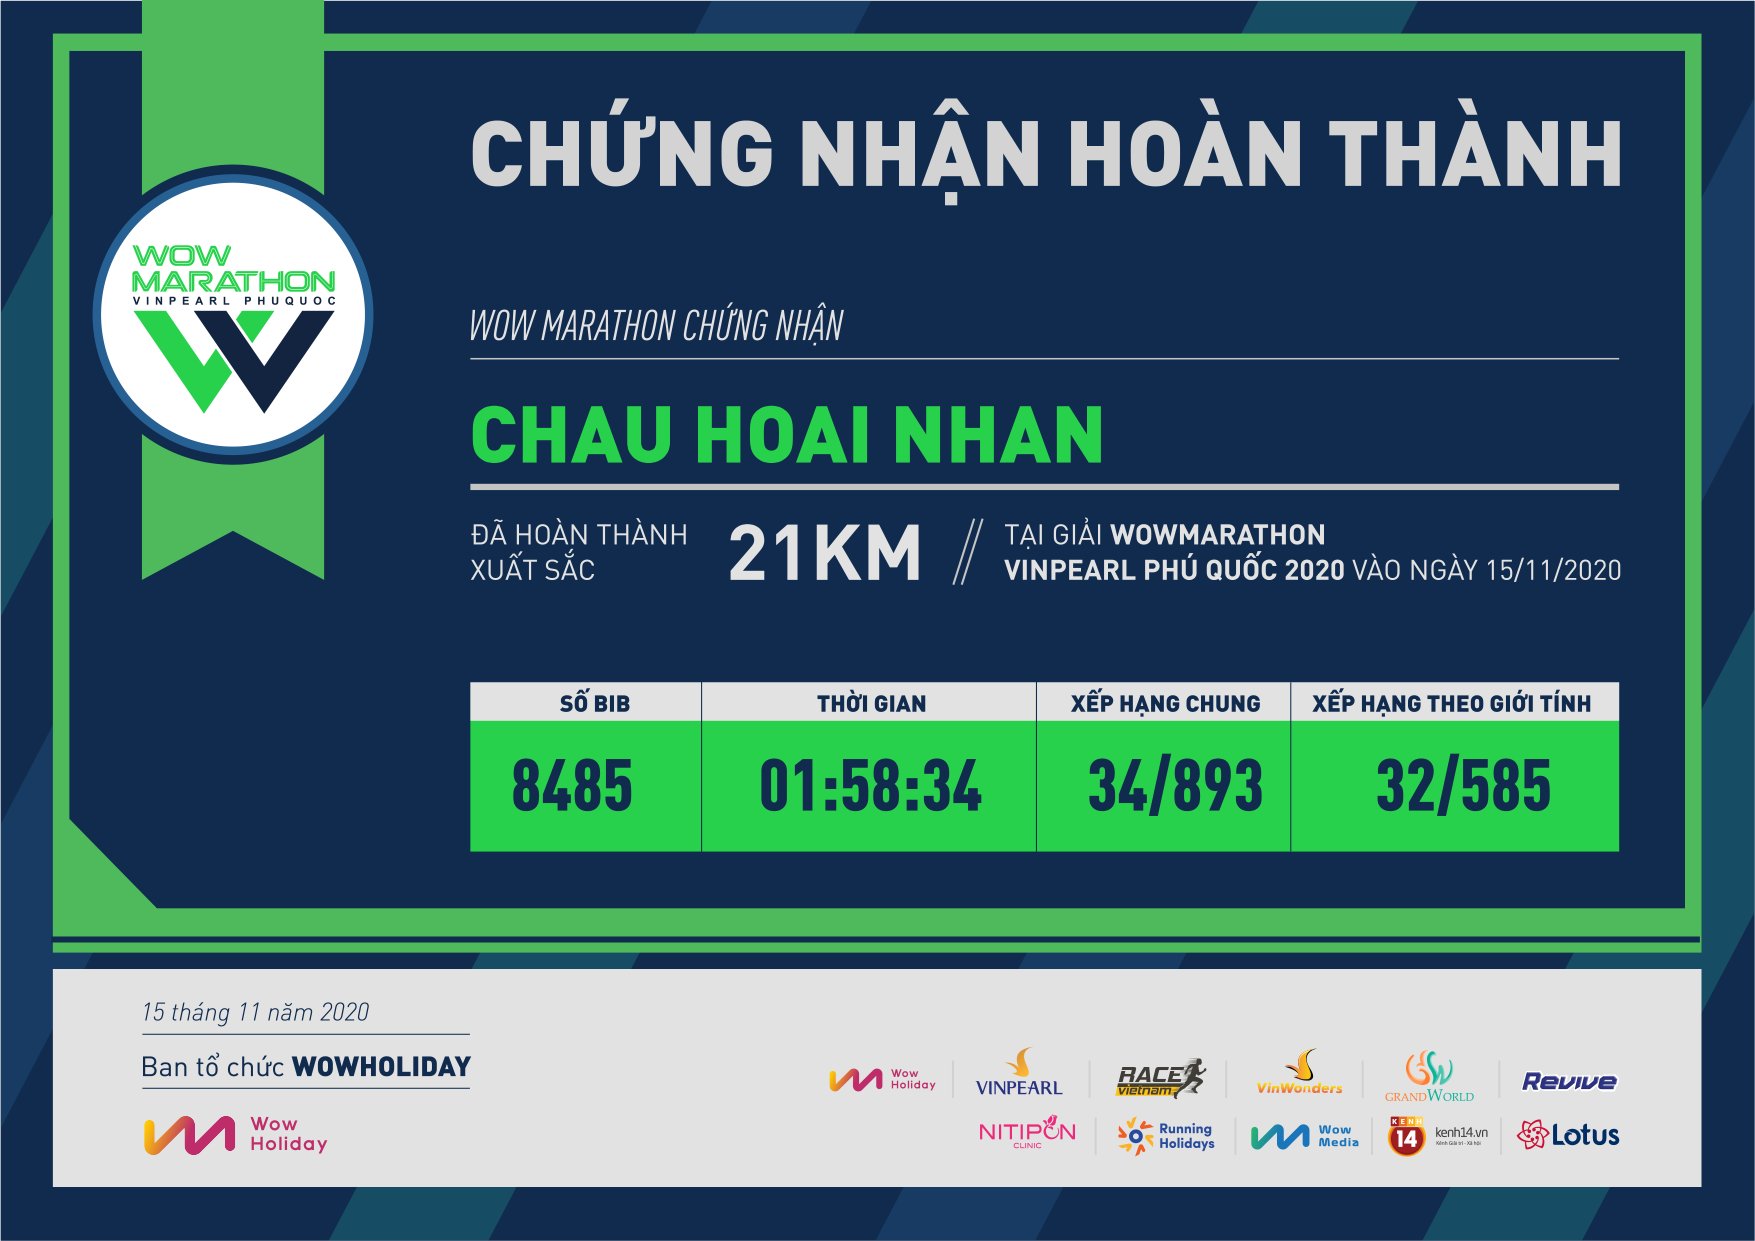 8485 - Chau Hoai Nhan